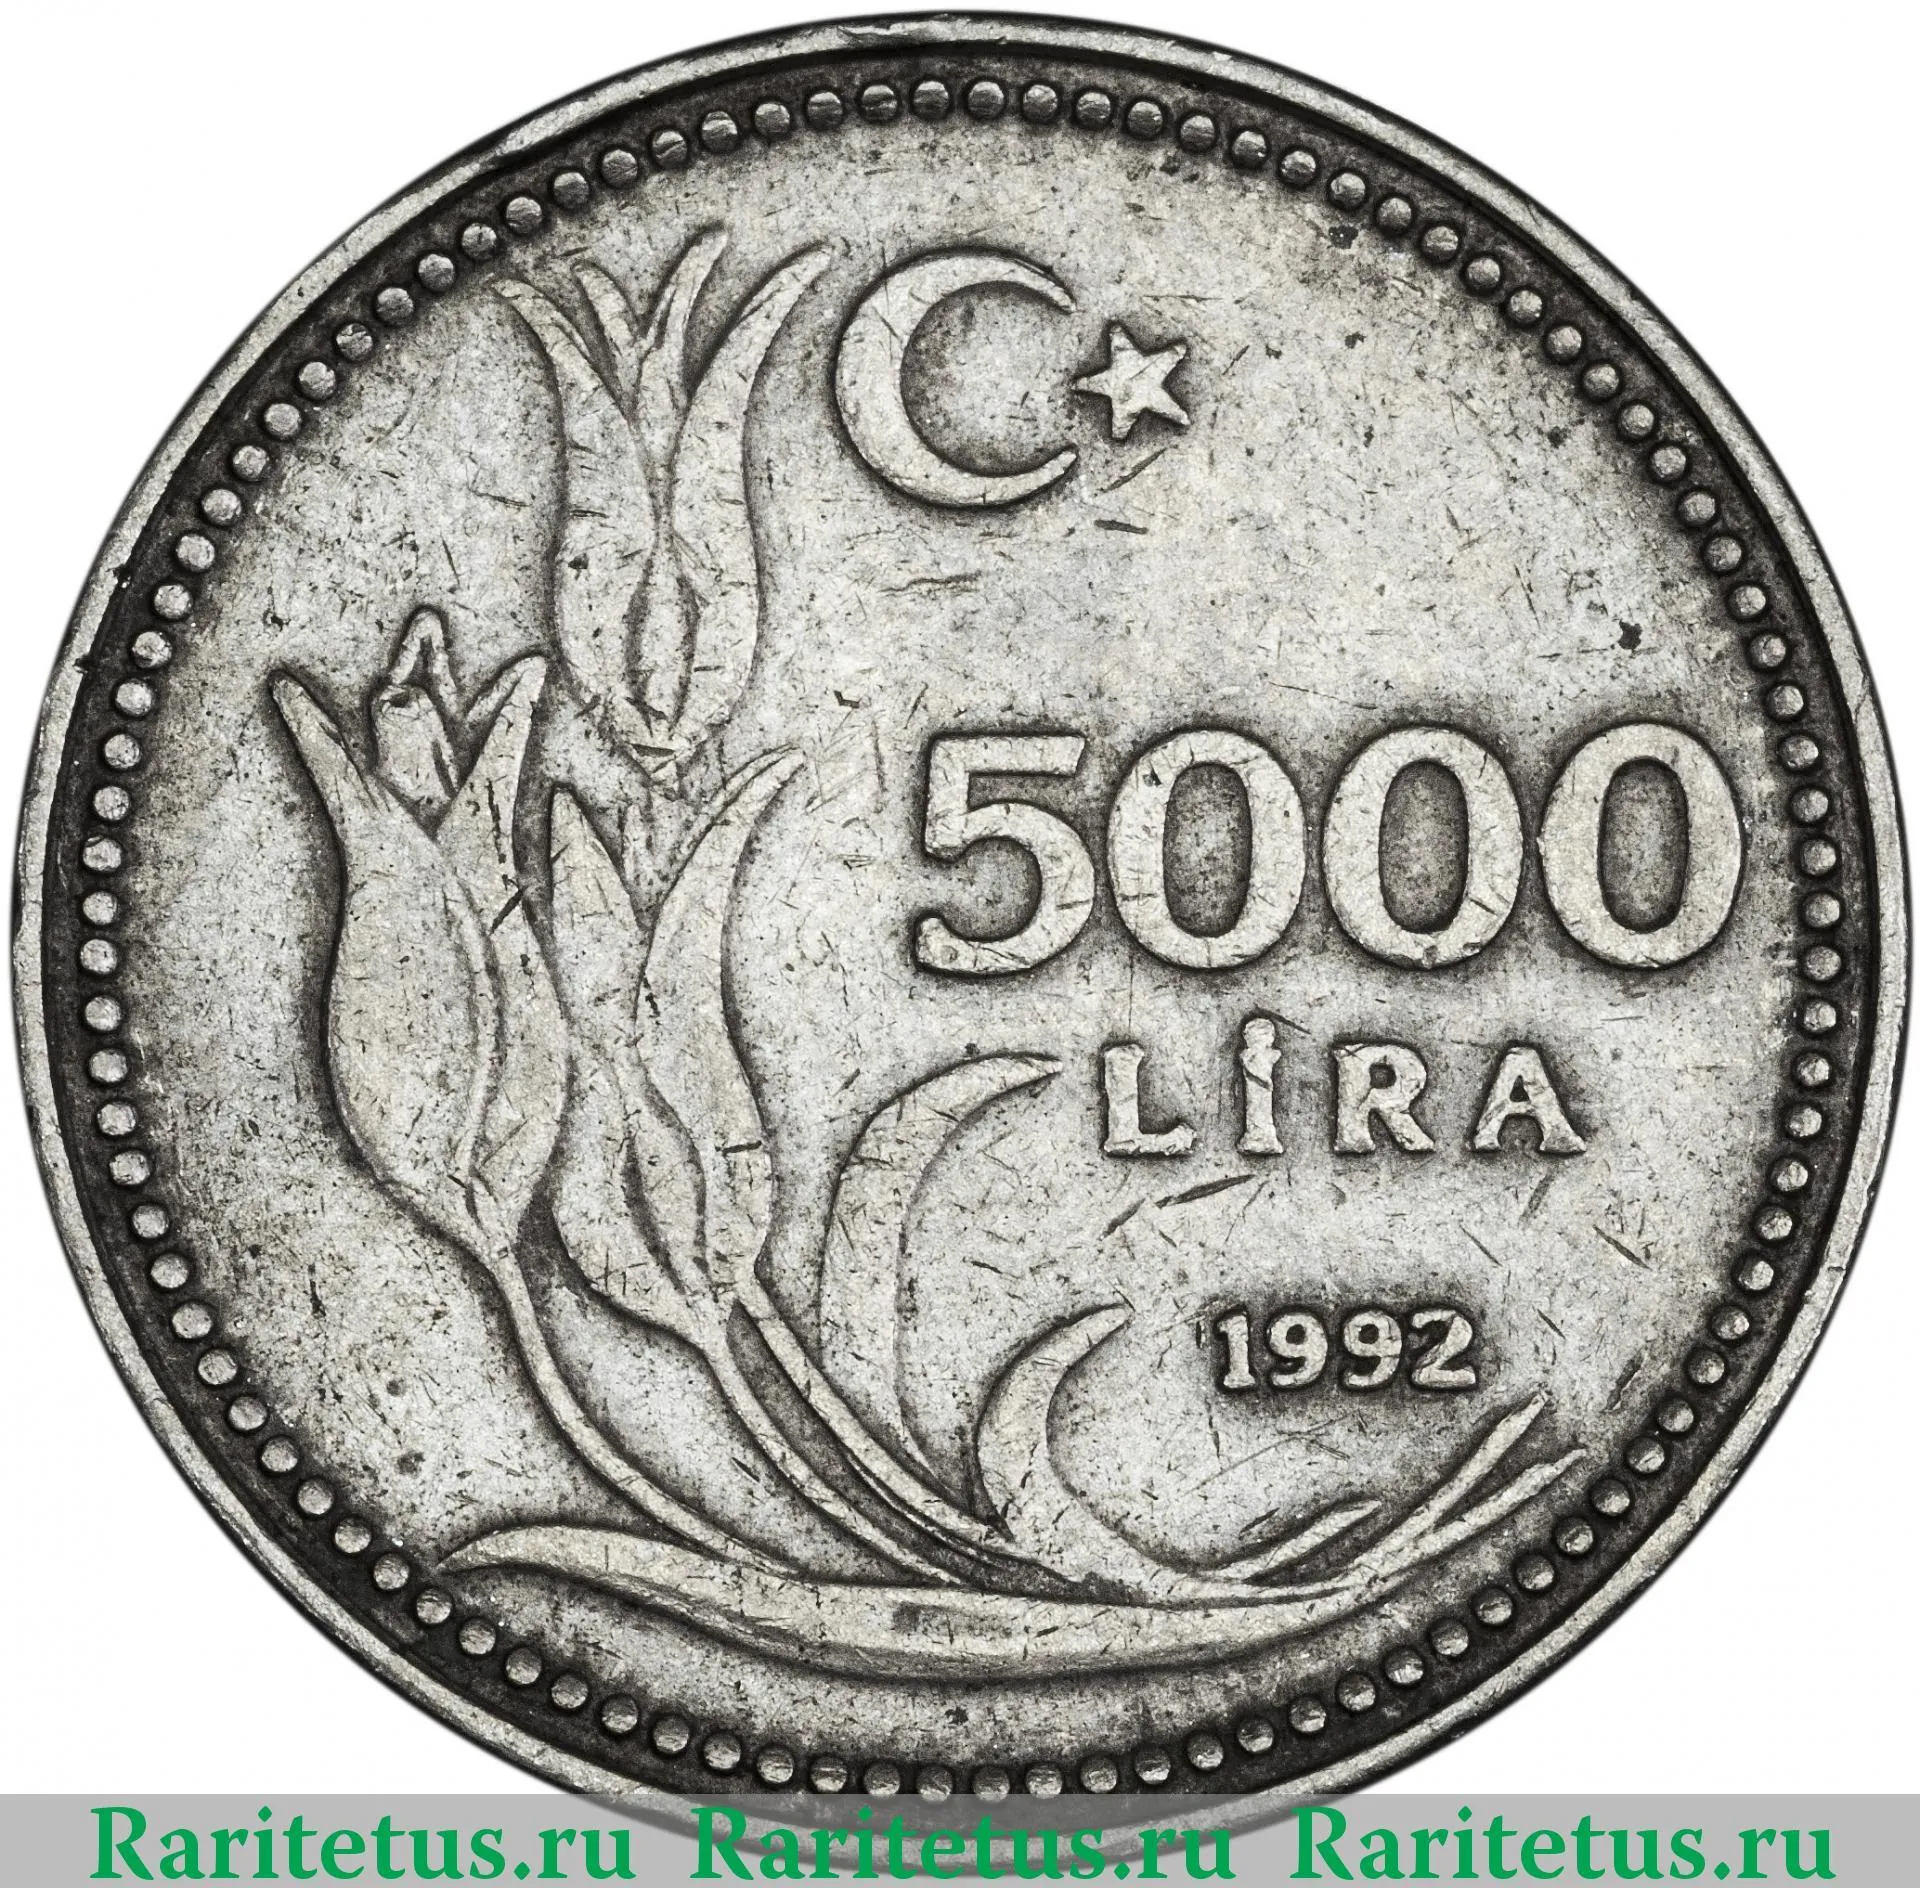 Рубль стоимостью 5000. Монета Турция 5000 лир 1992. Монета 5000 лир Турция 1992 года.